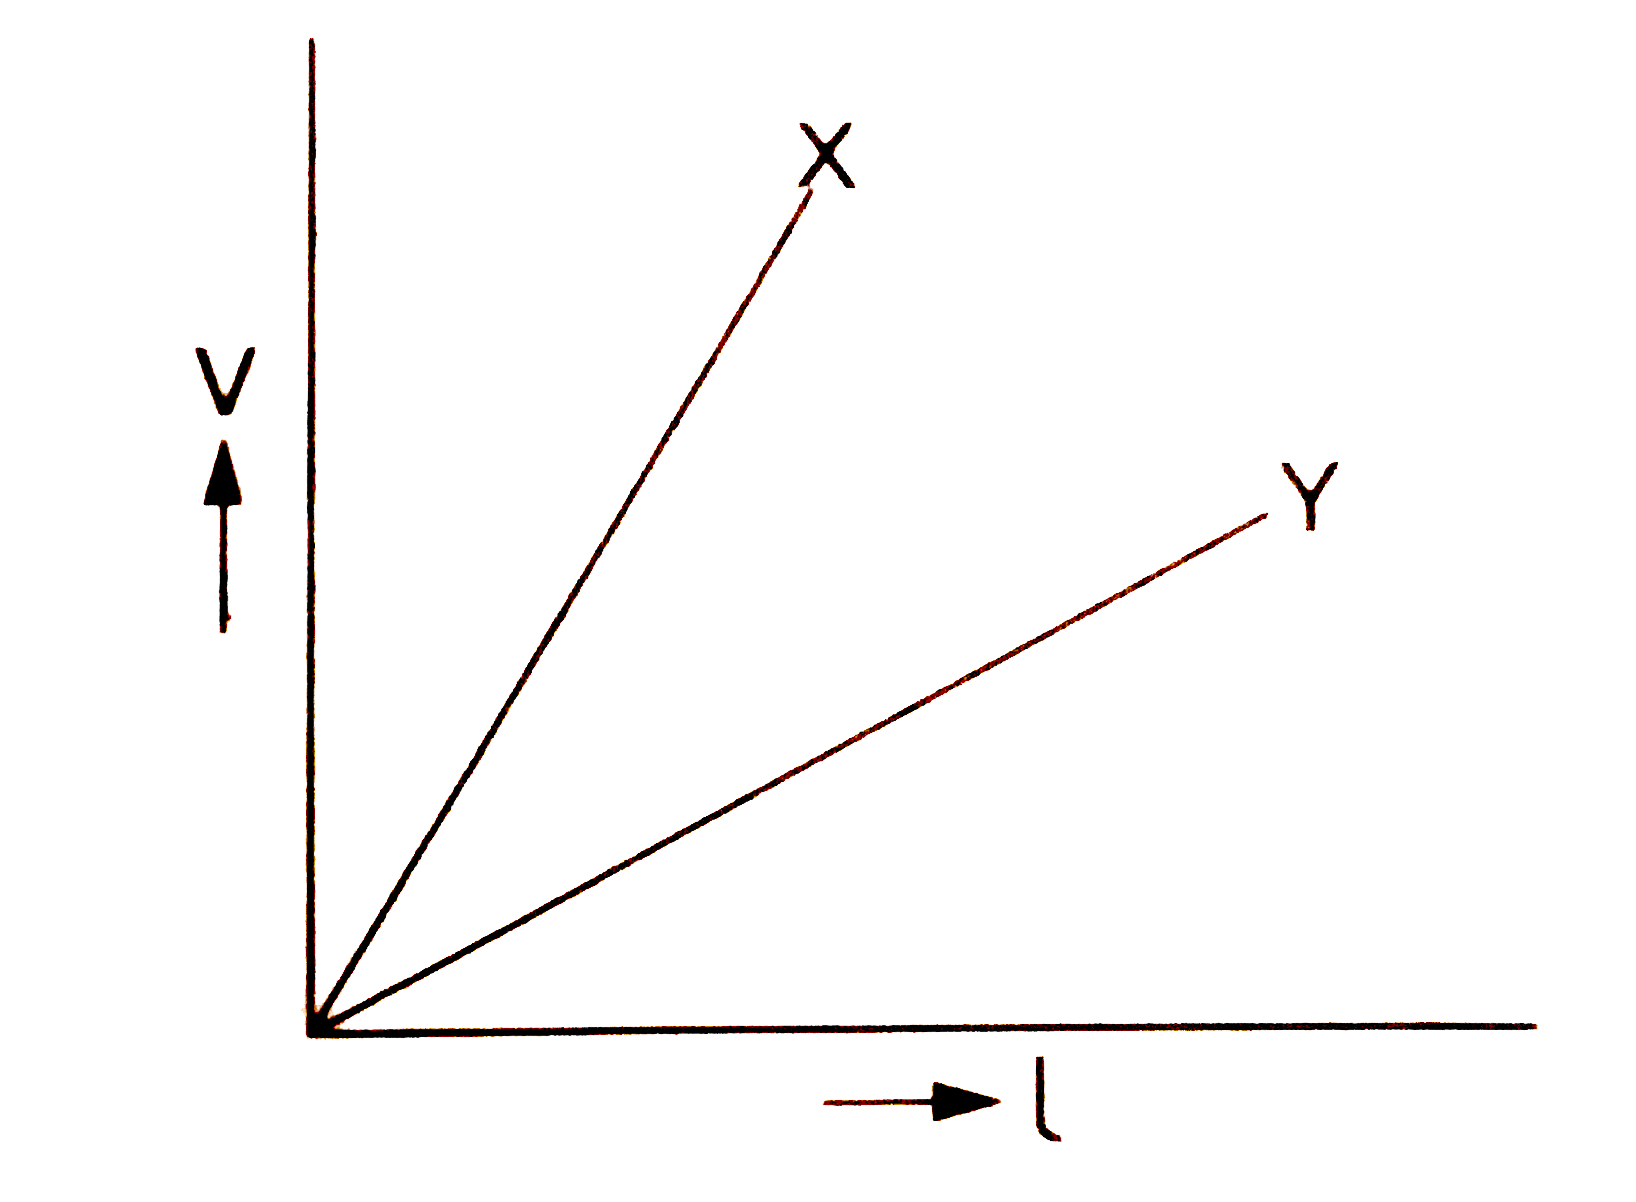 विभवमापी के सिद्धांत को लिखे। दो विभावमपियों X तथा Y द्वारा मापे गए विभवांतर V एवं लम्बाई l को चित्र में दिए गए ग्राफ में दर्शाया गया है। इससे किस विभवमापी द्वारा दो सेलों के विद्युत-वाहक बालों की तुलना करना बेहतर होगा?